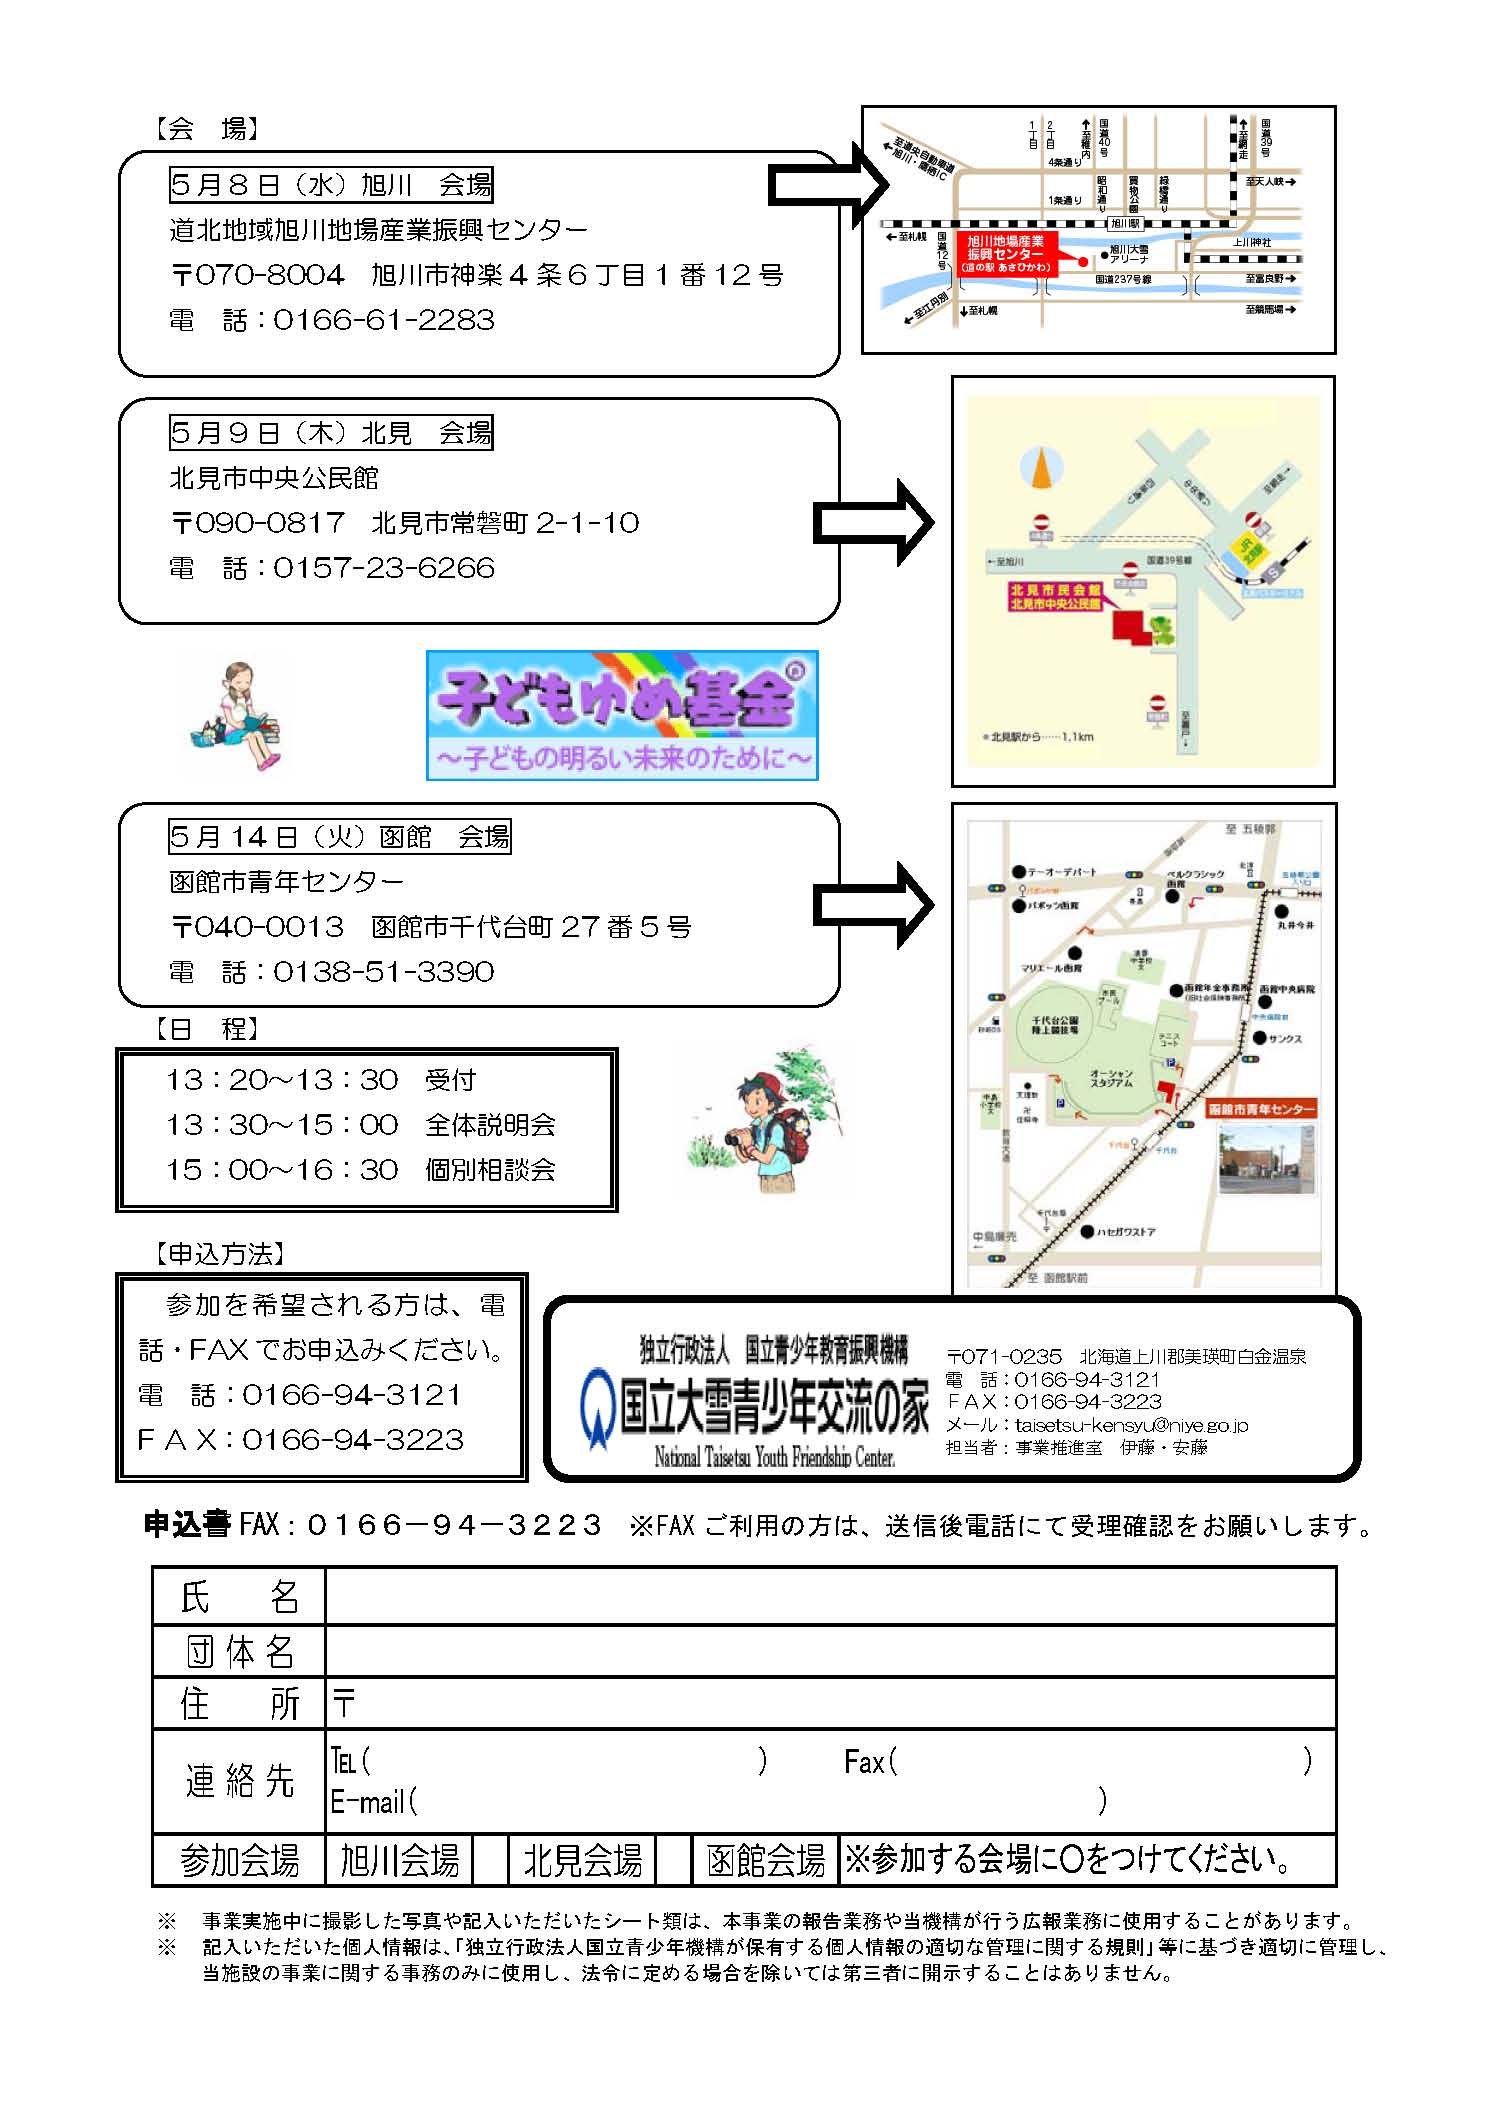 http://hakomachi.com/townnews2/images/20130504002yumetirasi_%E3%83%9A%E3%83%BC%E3%82%B8_02.jpg